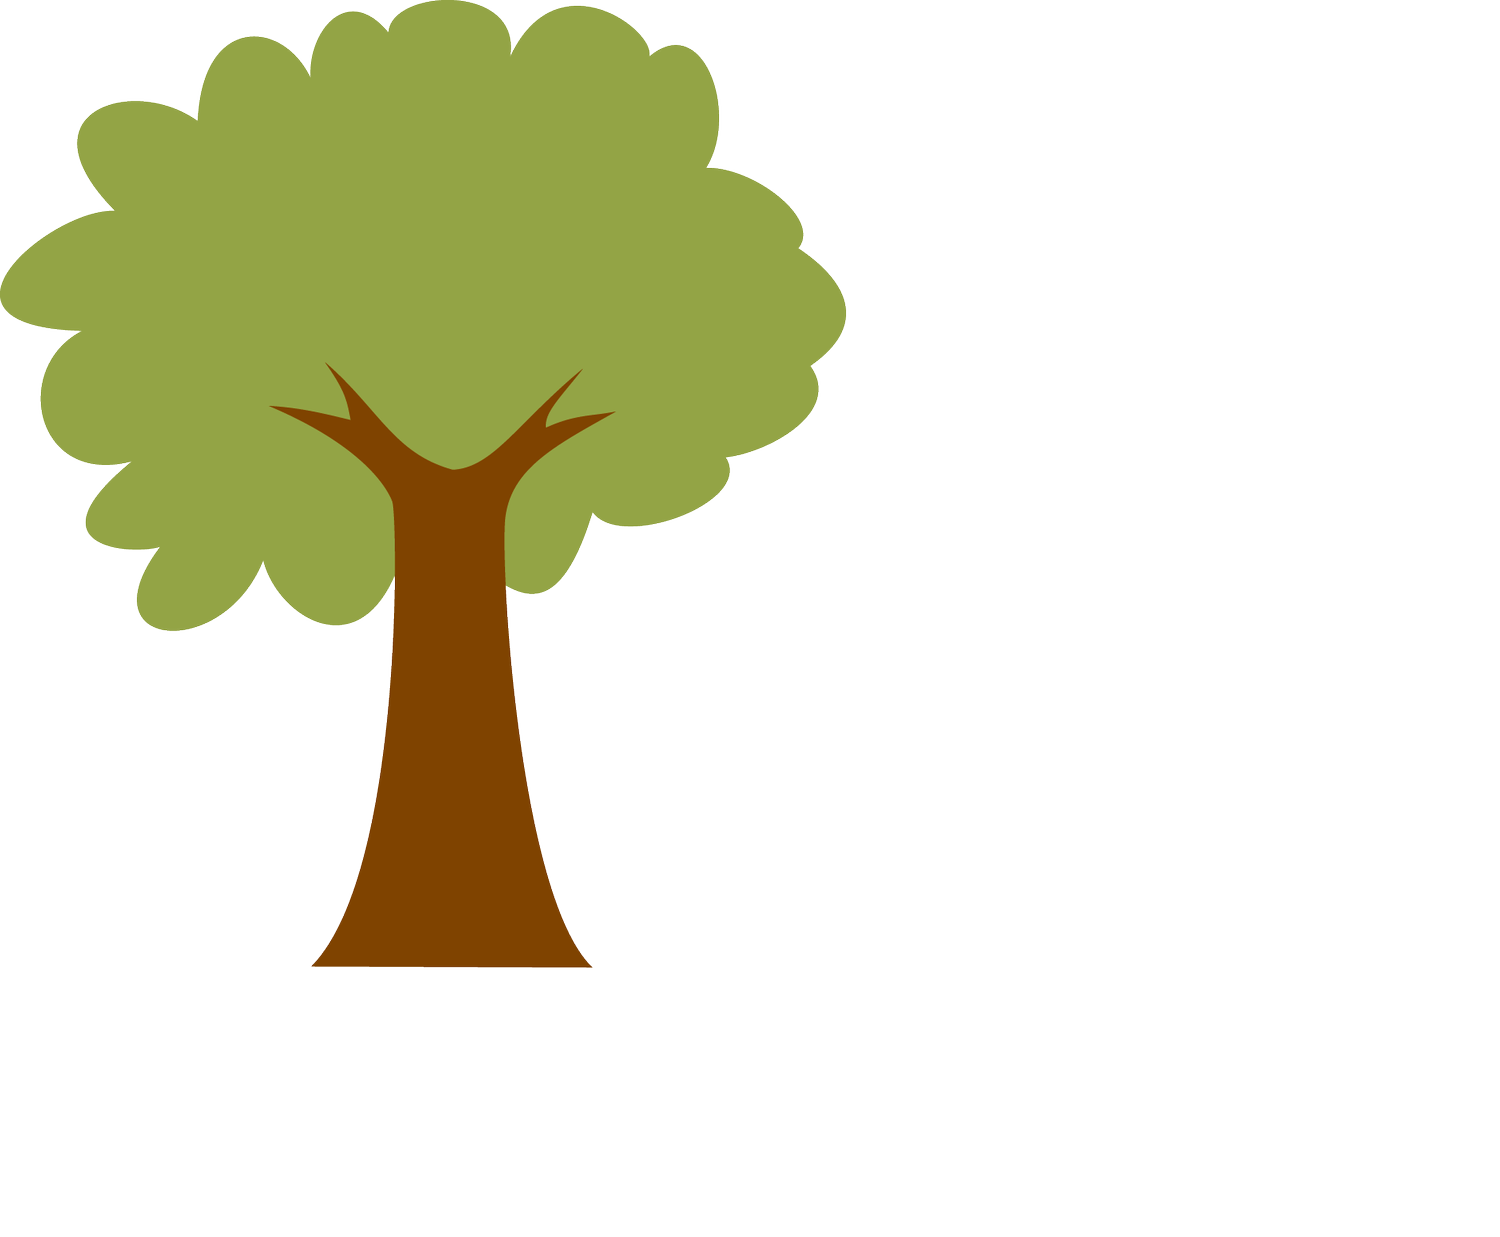 The Haiti Tree Project